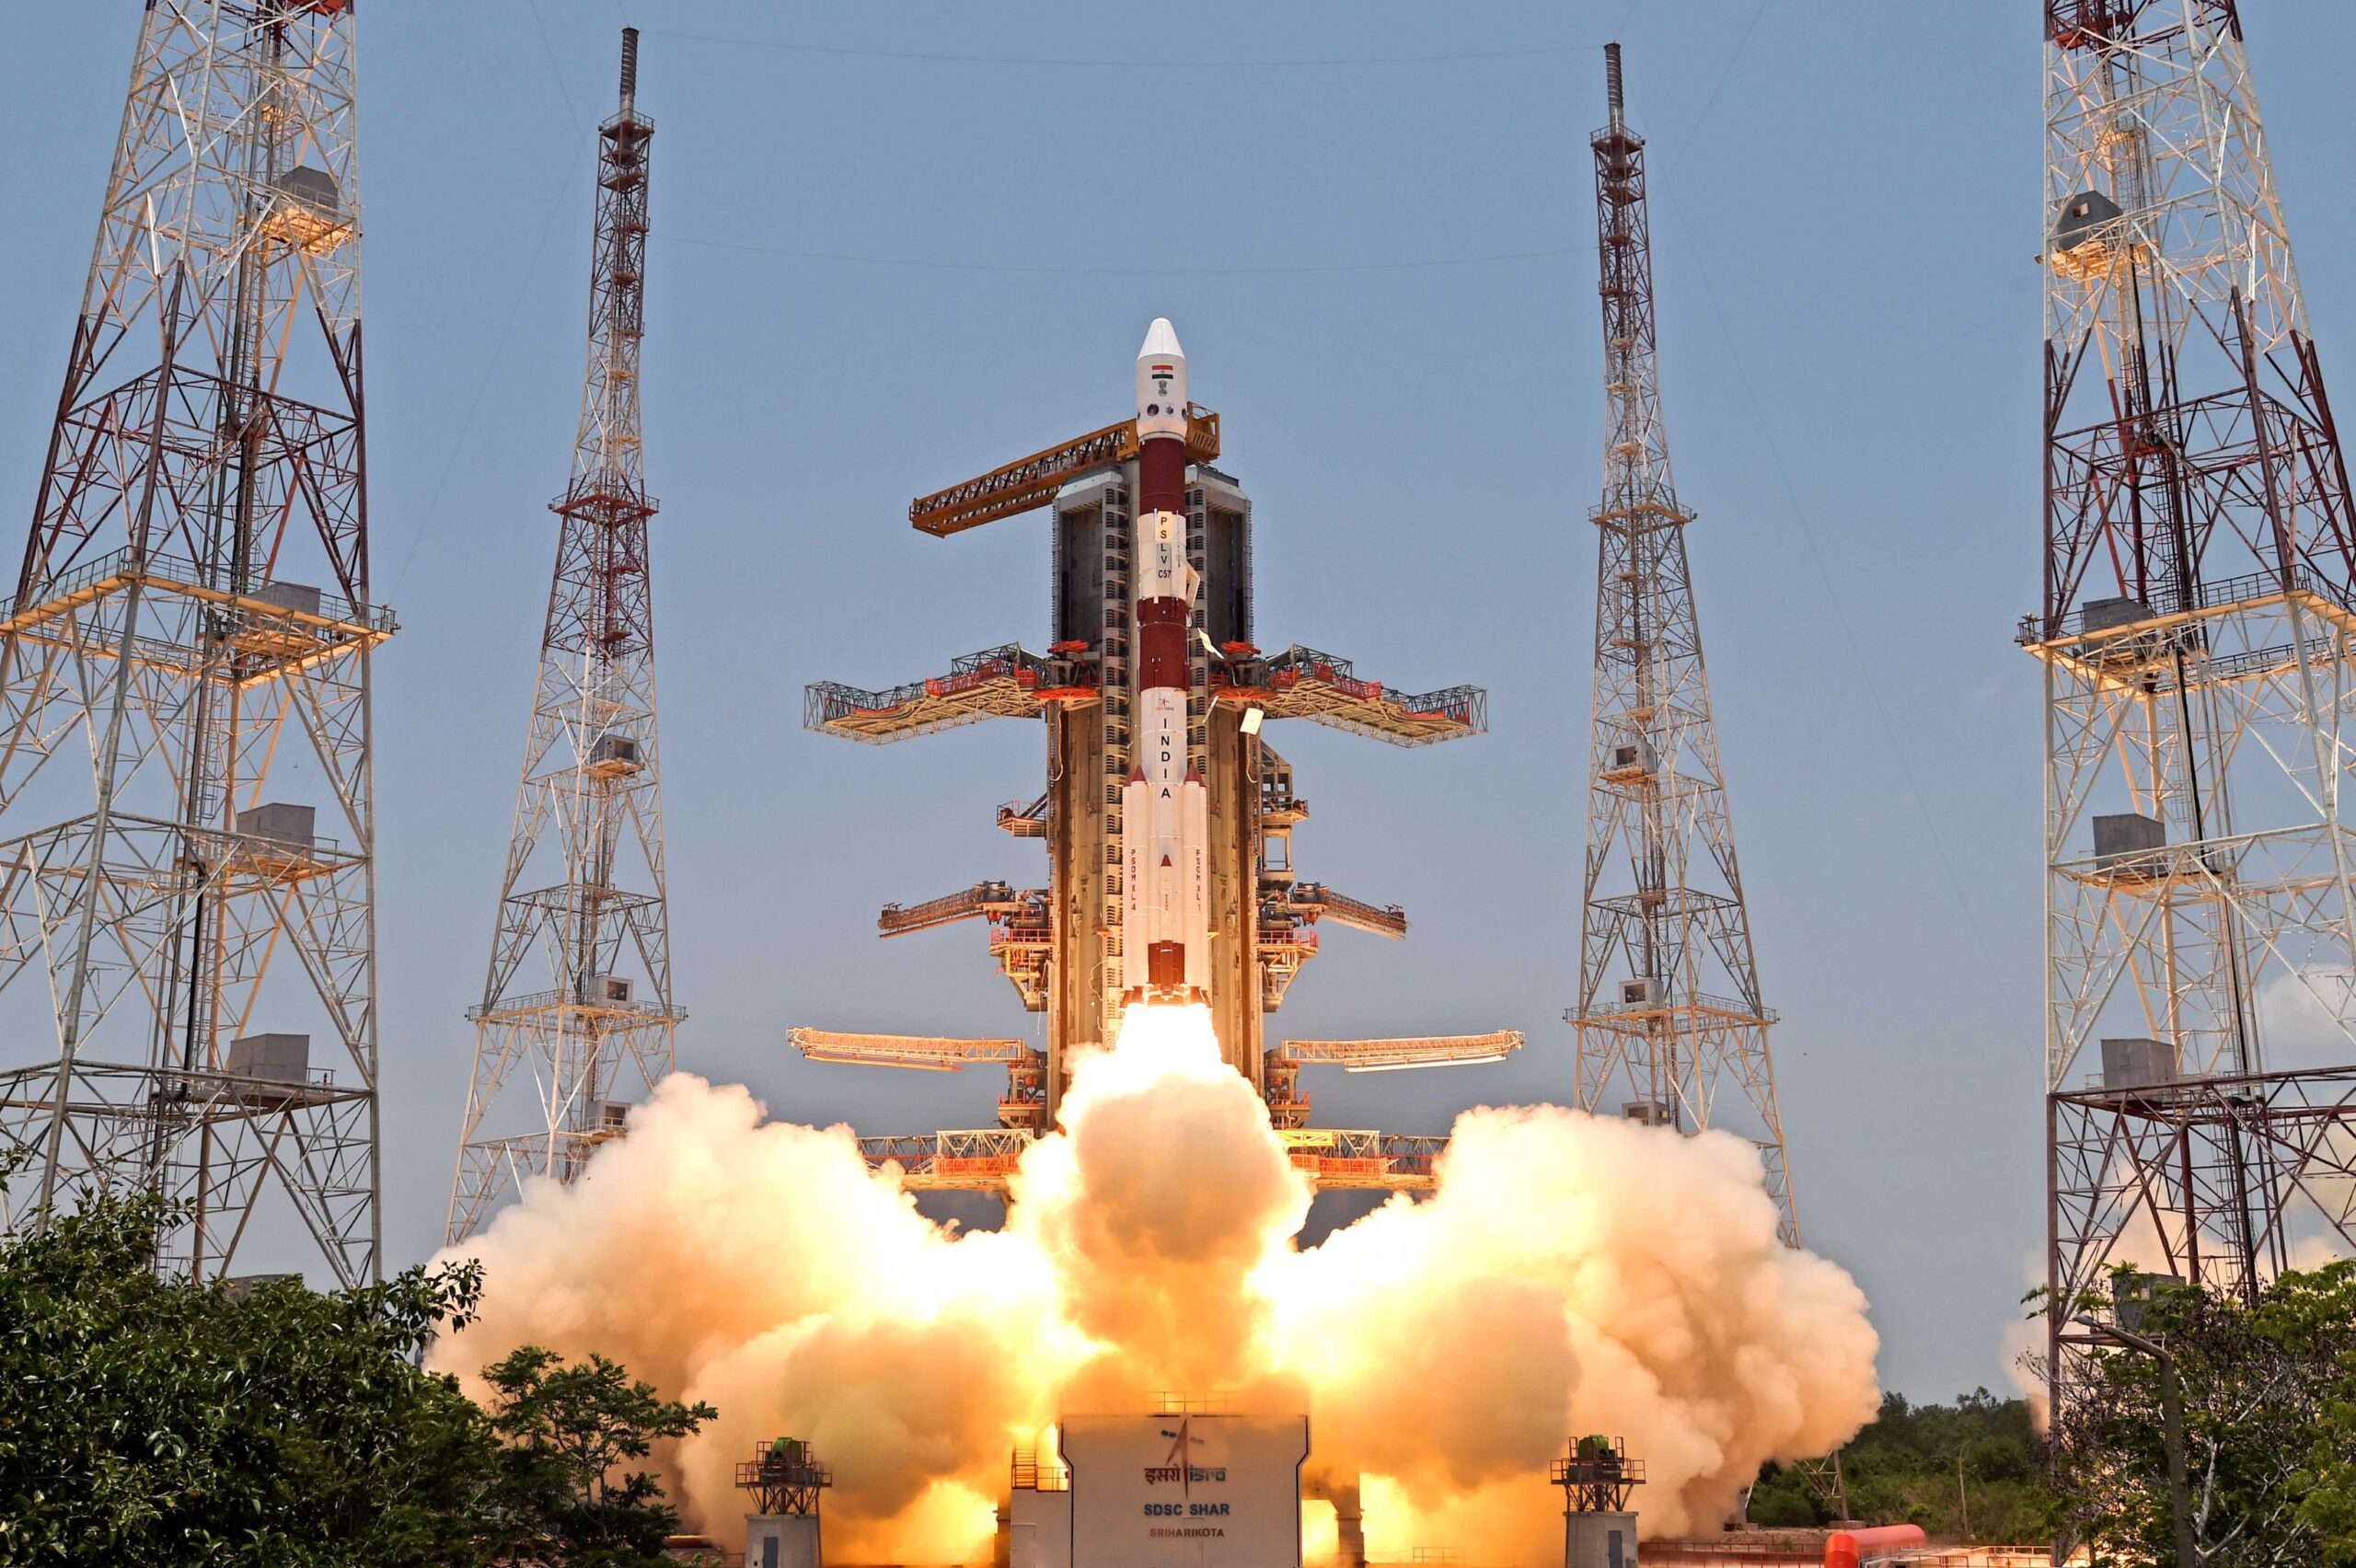 インドのアディティヤ-L1太陽観測所がラグランジュ点の周囲の軌道に入る